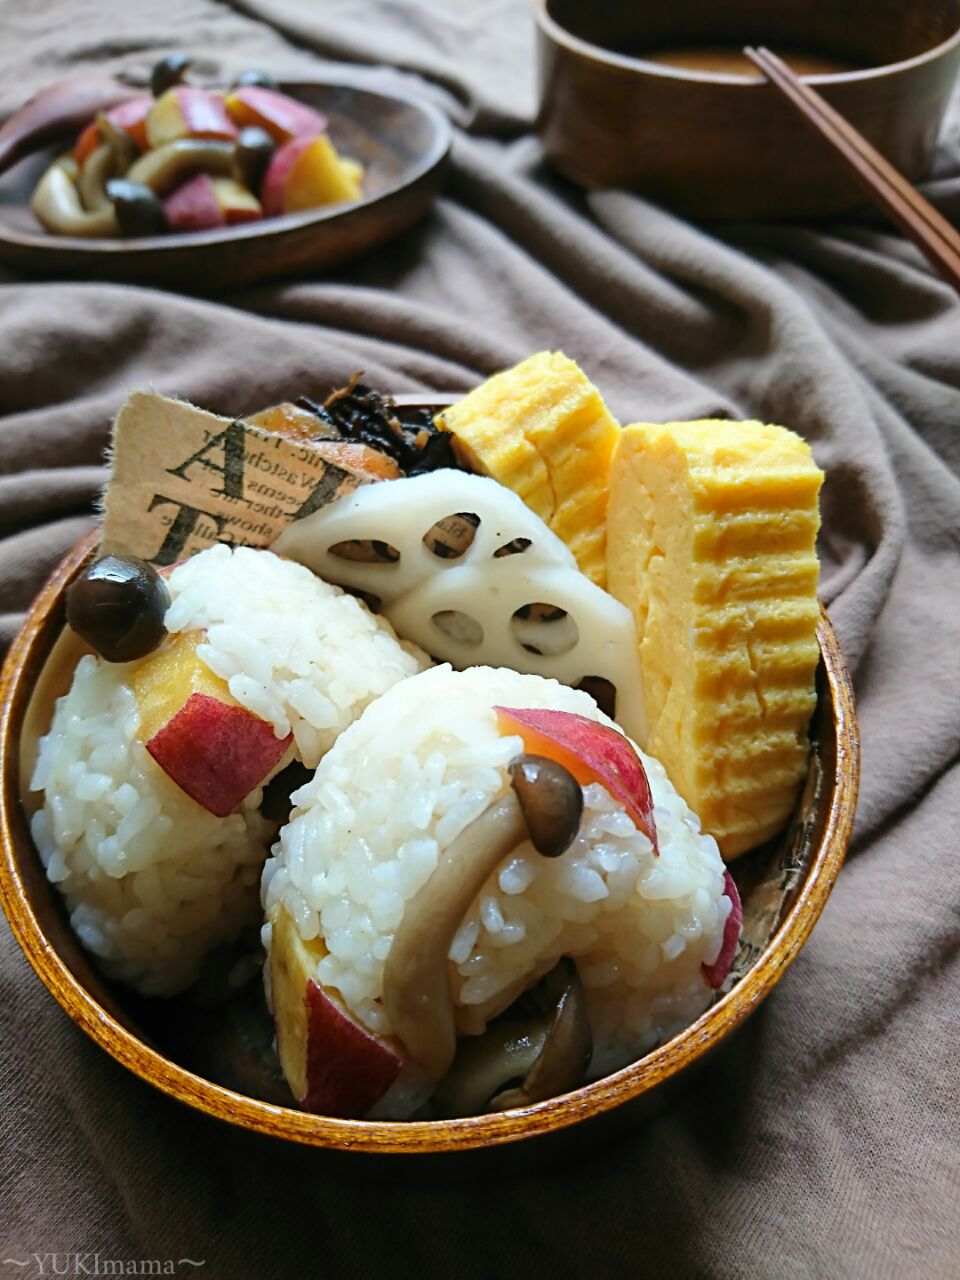 さつま芋ときのこの〜autumn color
バターワイン醤油オイルおにぎり〜のお弁当